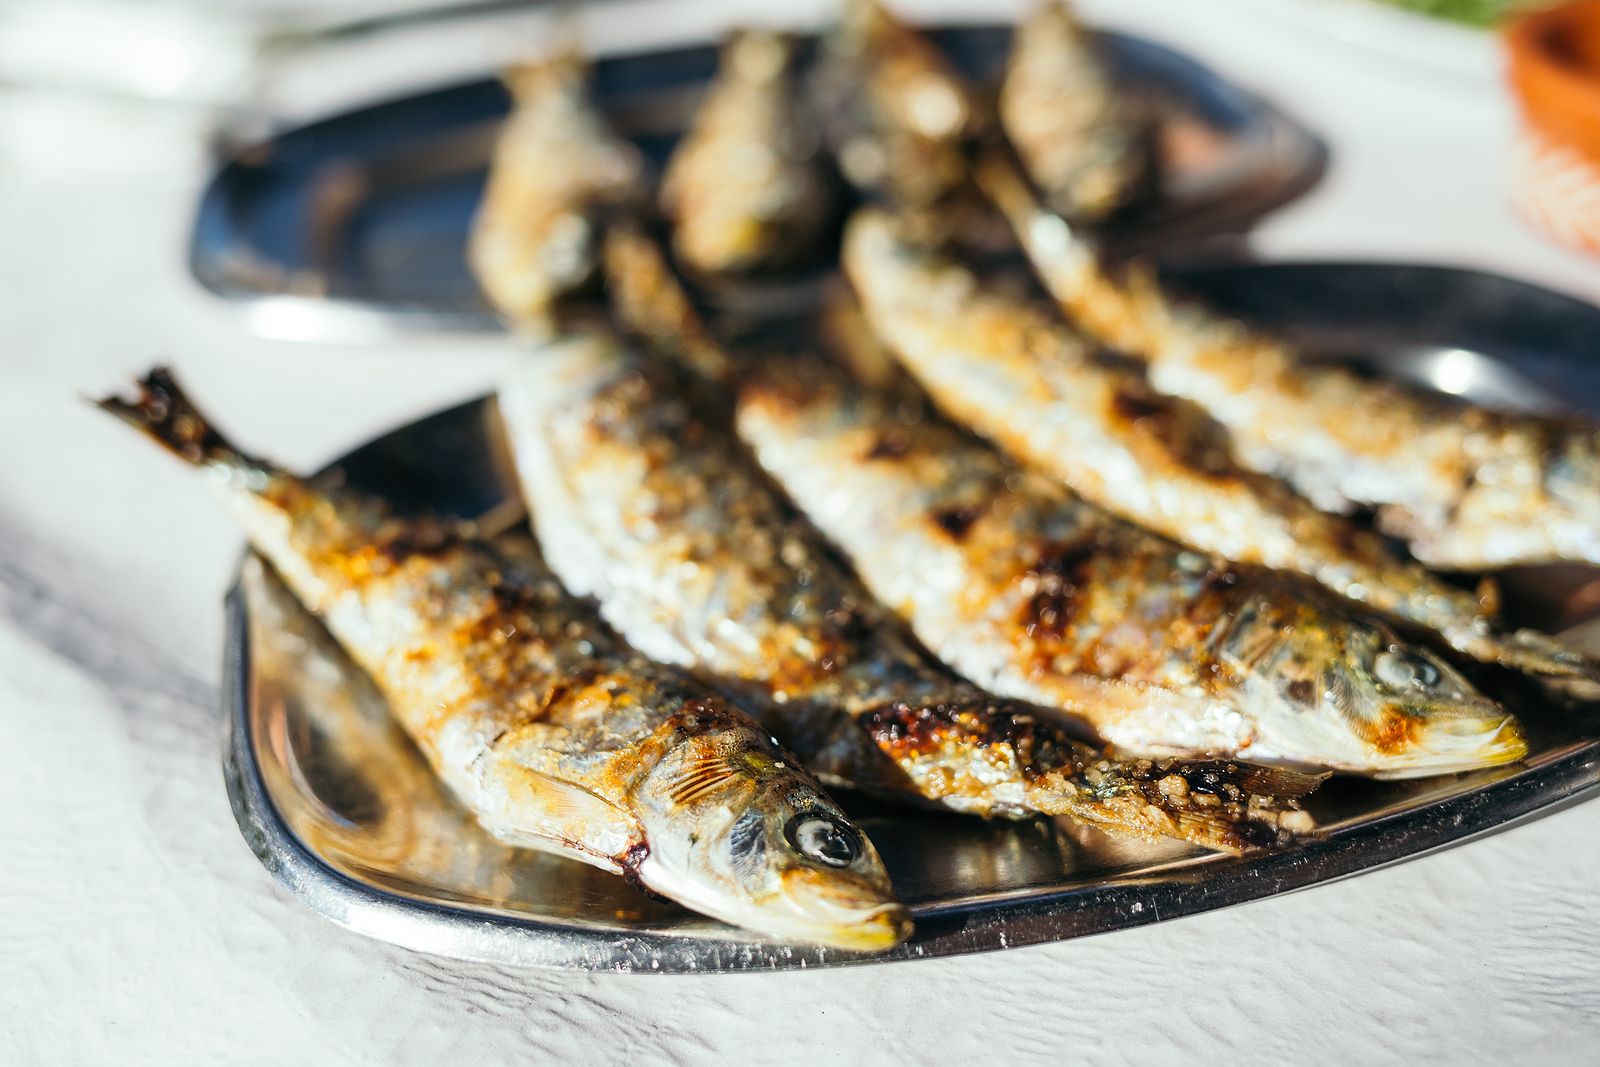 Evita que tu casa huela a chiringuito si cocinas sardinas en casa Foto: bigstock